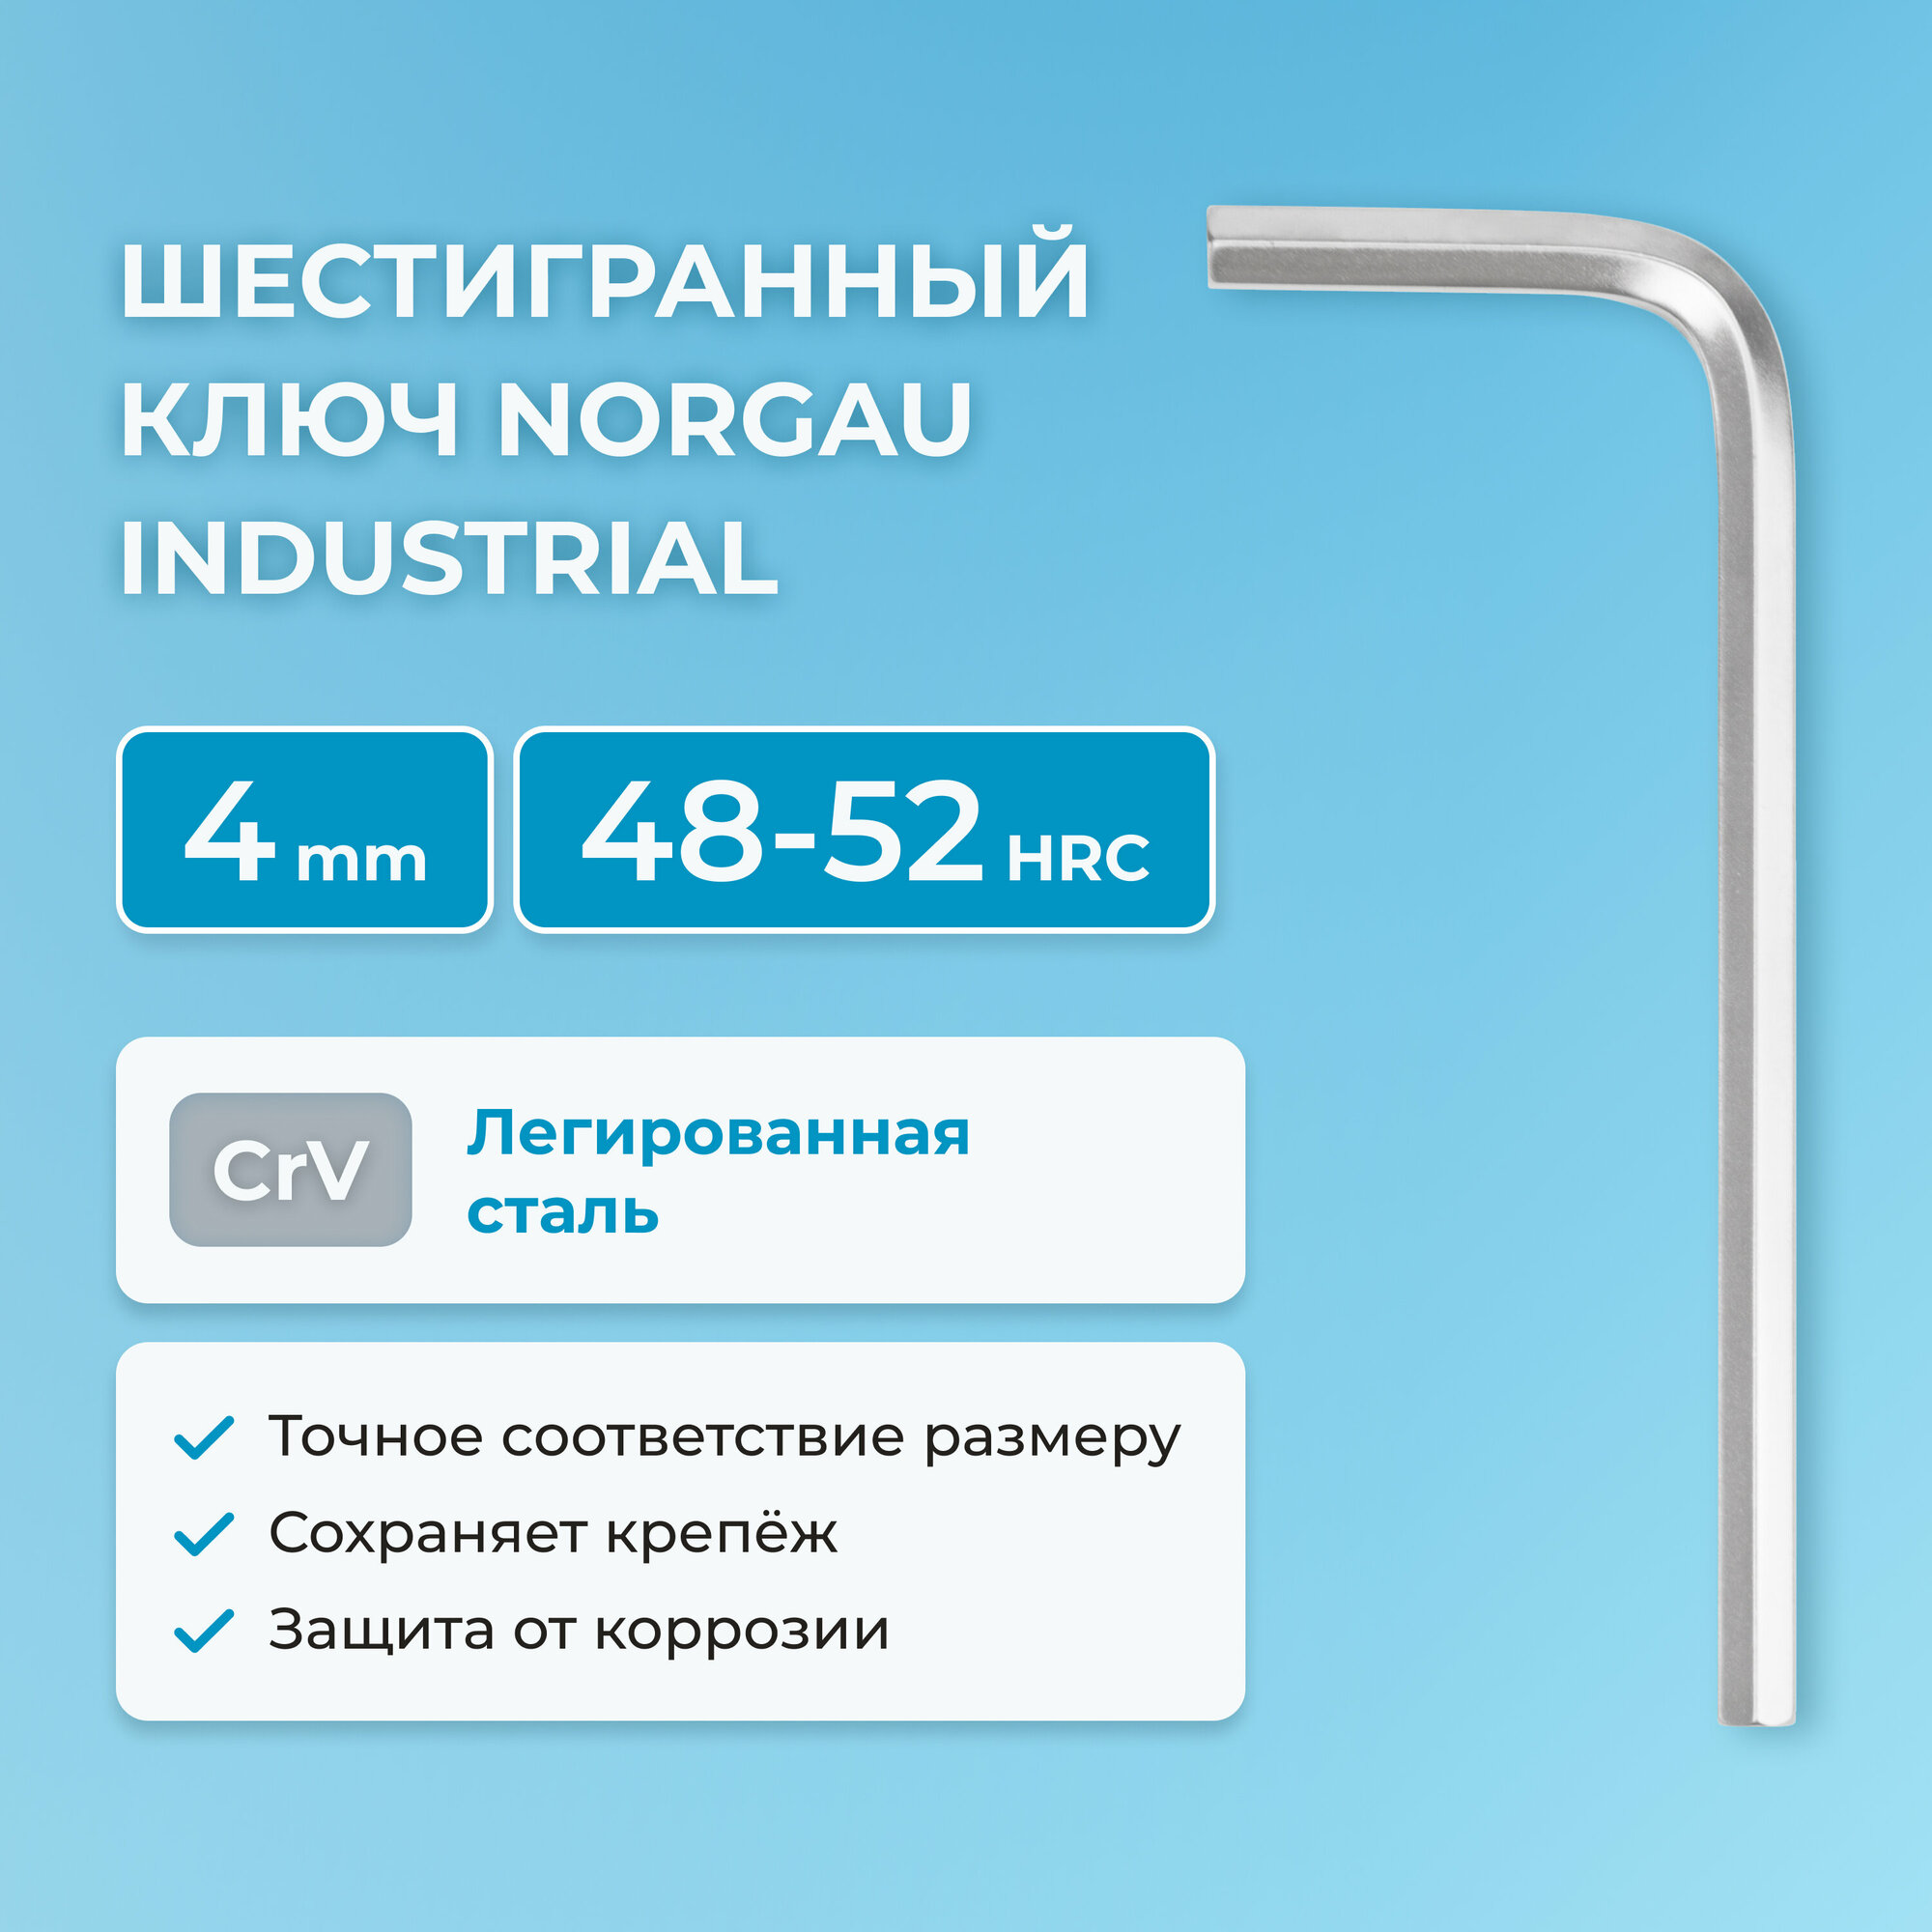 Шестигранный ключ NORGAU Industrial наружный шестигранник с хромированием, 48-52 HRC, 4 мм